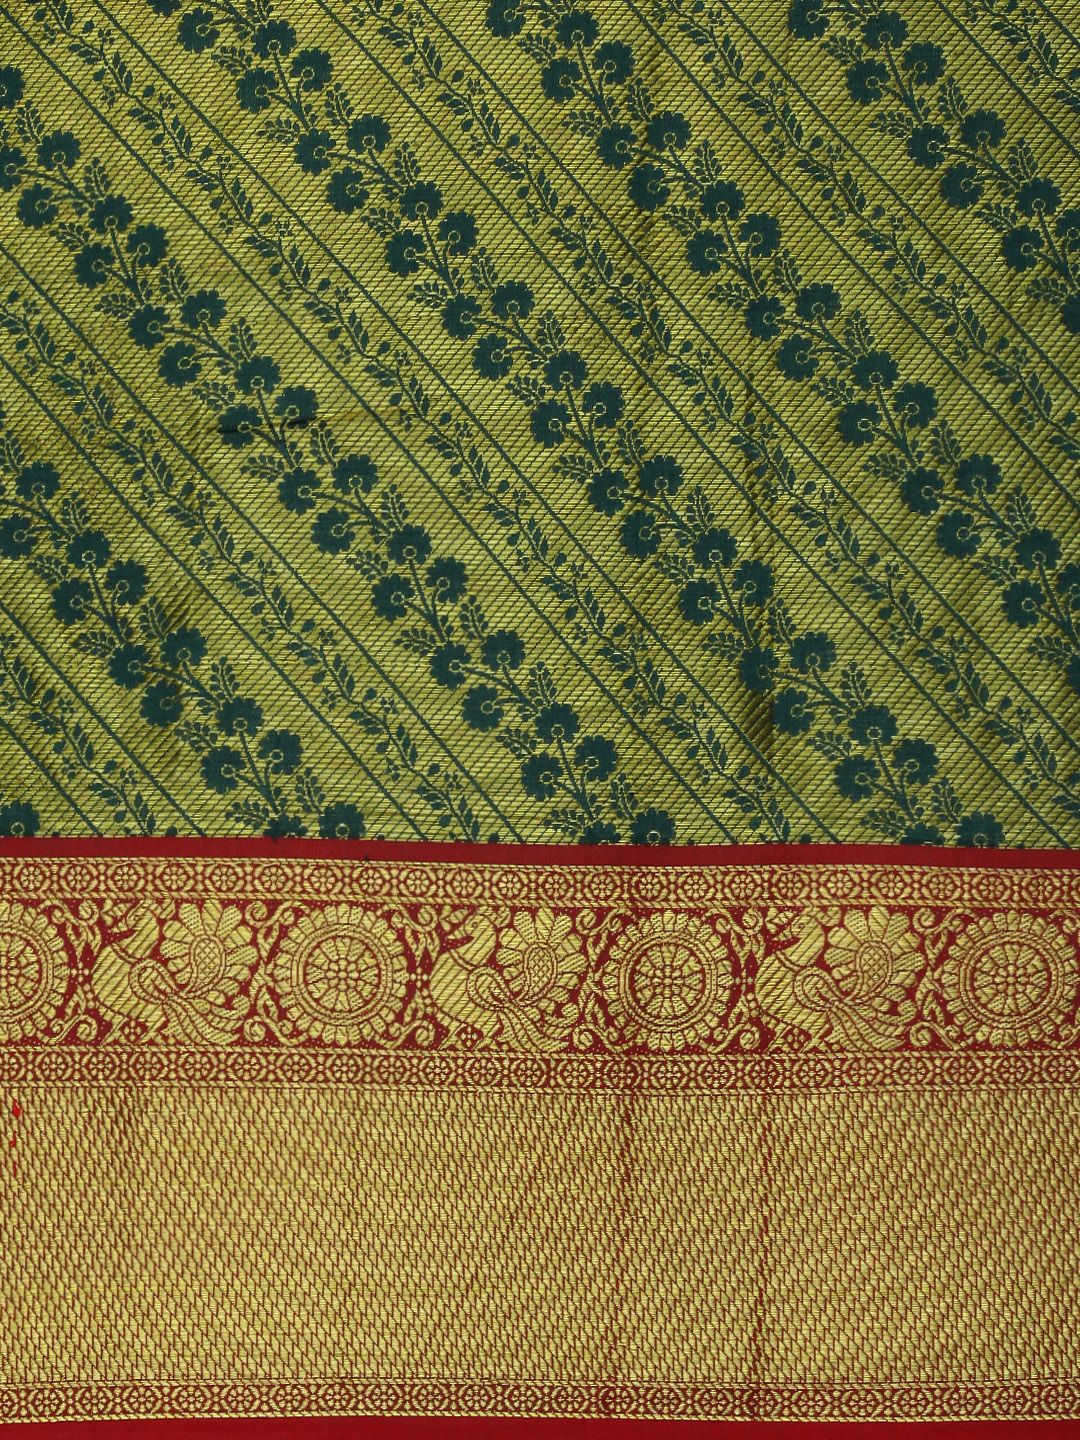 Green color Luxurious Kanchipuram Sarees